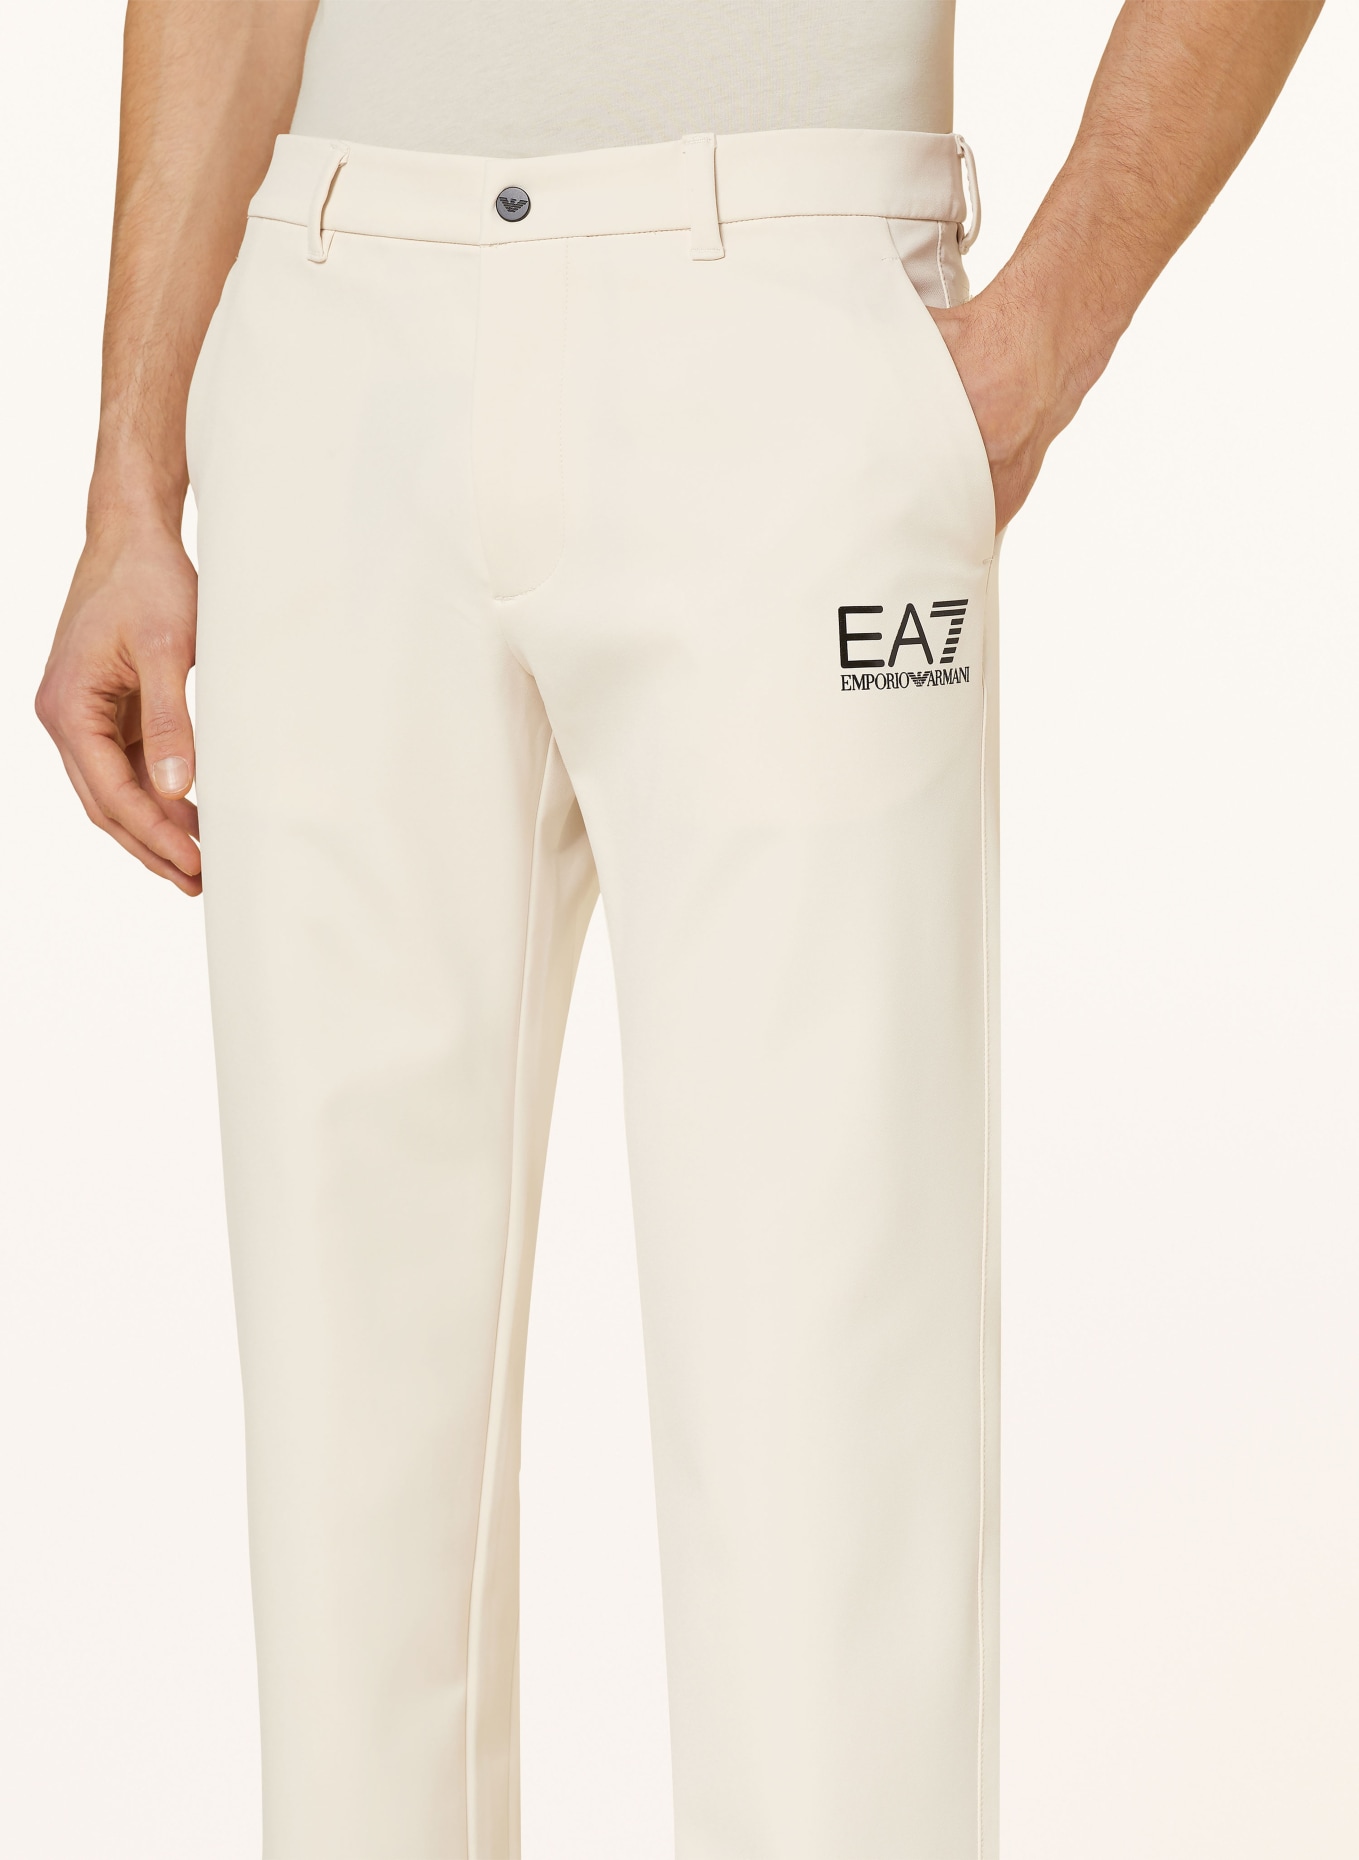 EA7 EMPORIO ARMANI Golf trousers, Color: CREAM (Image 5)